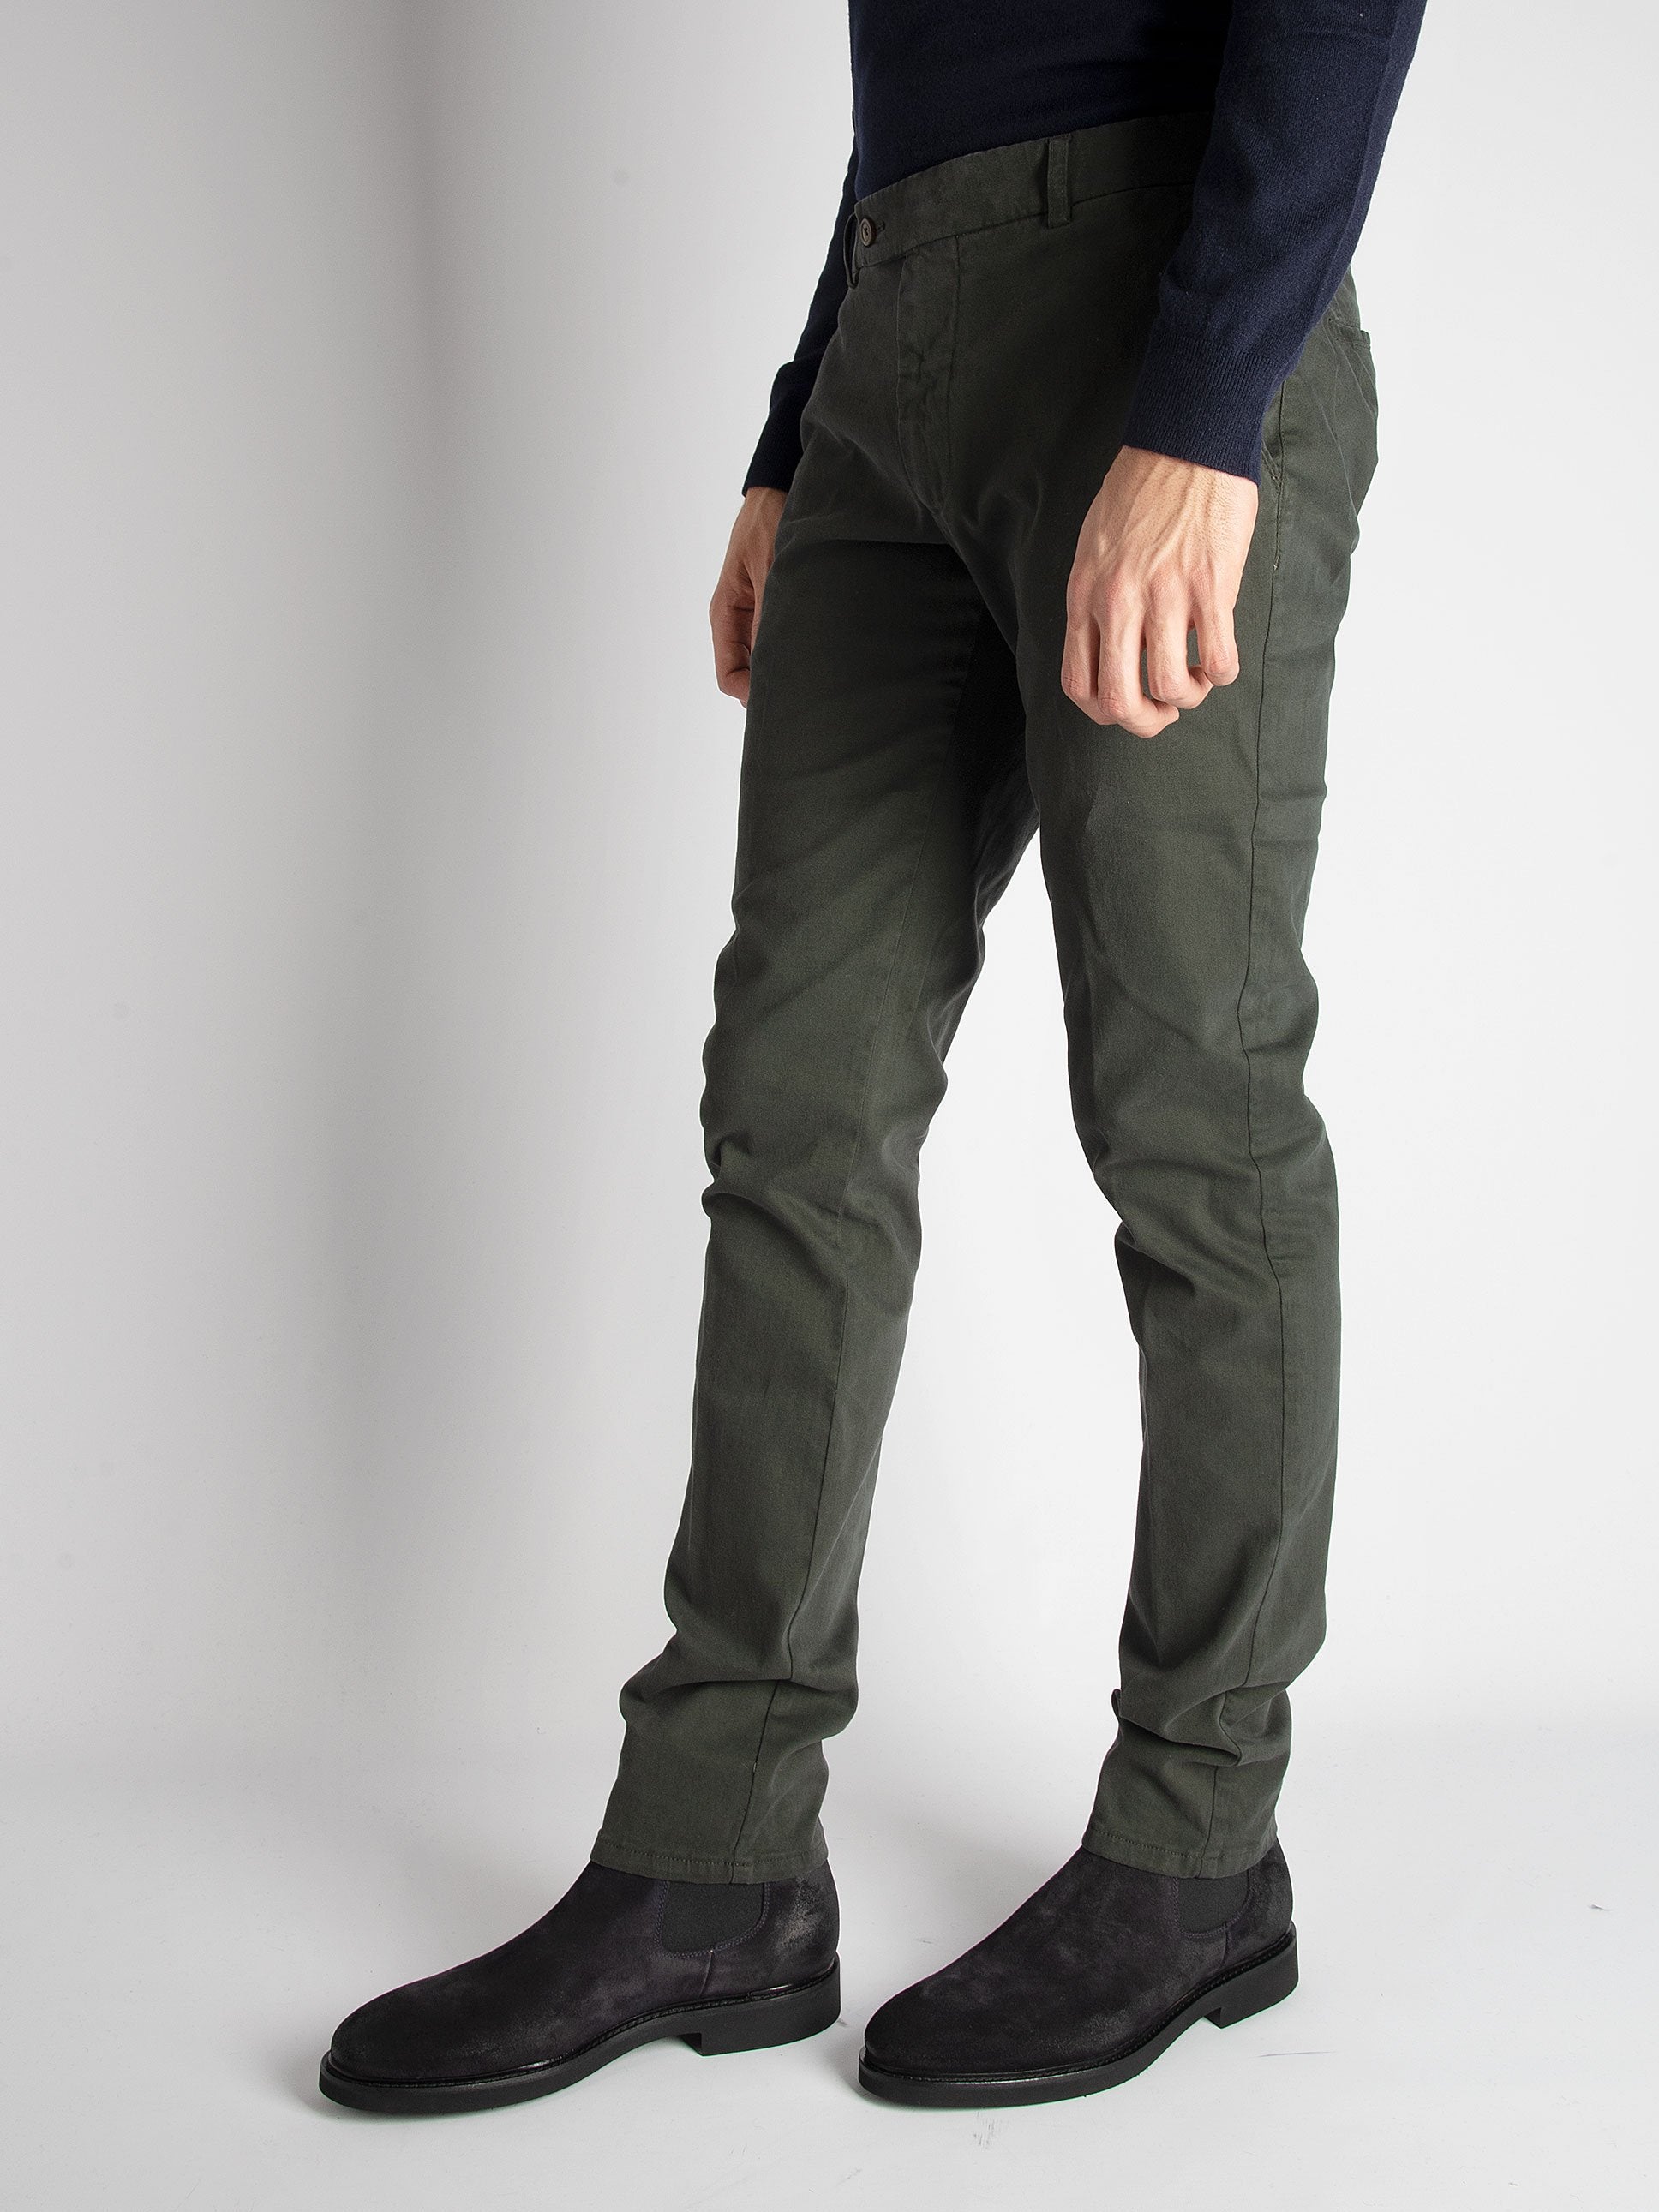 Pantalone 'Sc Slim' Manopesca - verde militare